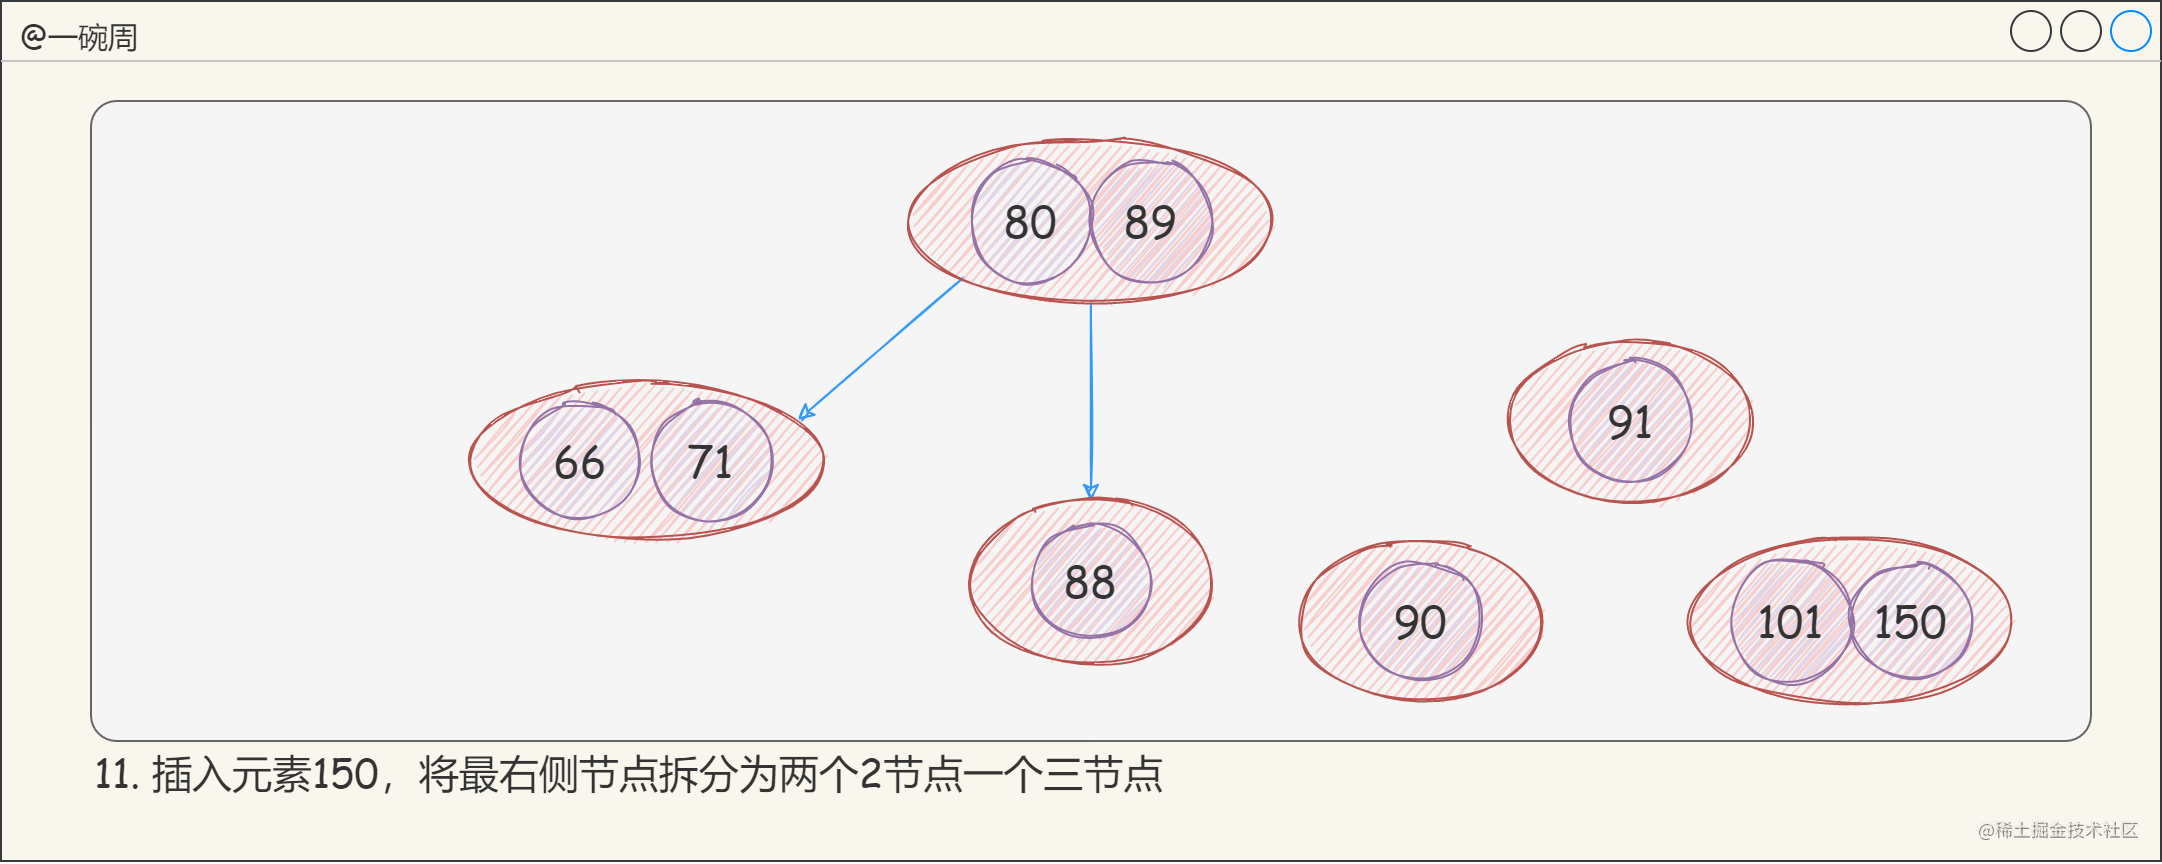 13_2-3-4樹的構建過程7_1wN-tqJkoz.png